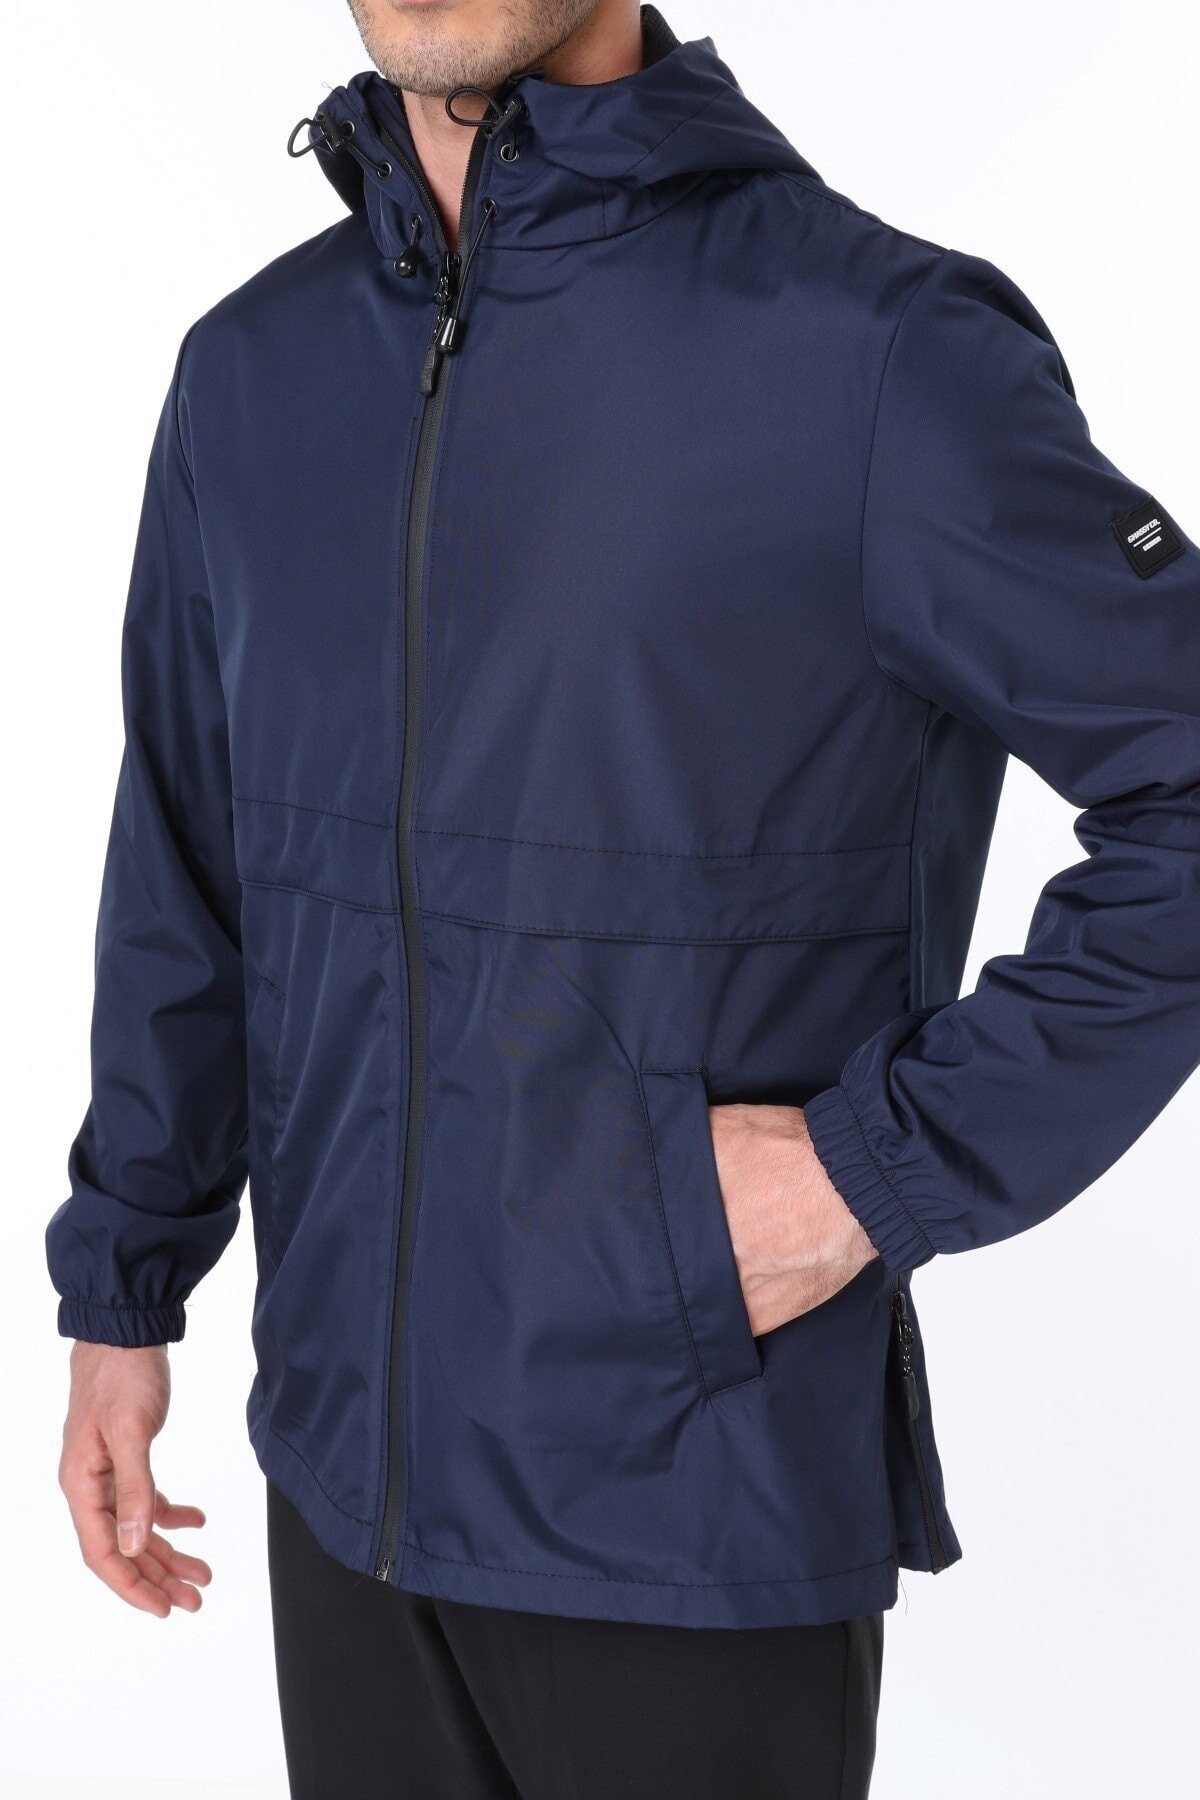 Ghassy Co.Erkek Rüzgarlık/Yağmurluk Outdoor Yırtmaç Detaylı Mevsimlik Taş Spor Ceket - LACİVERT